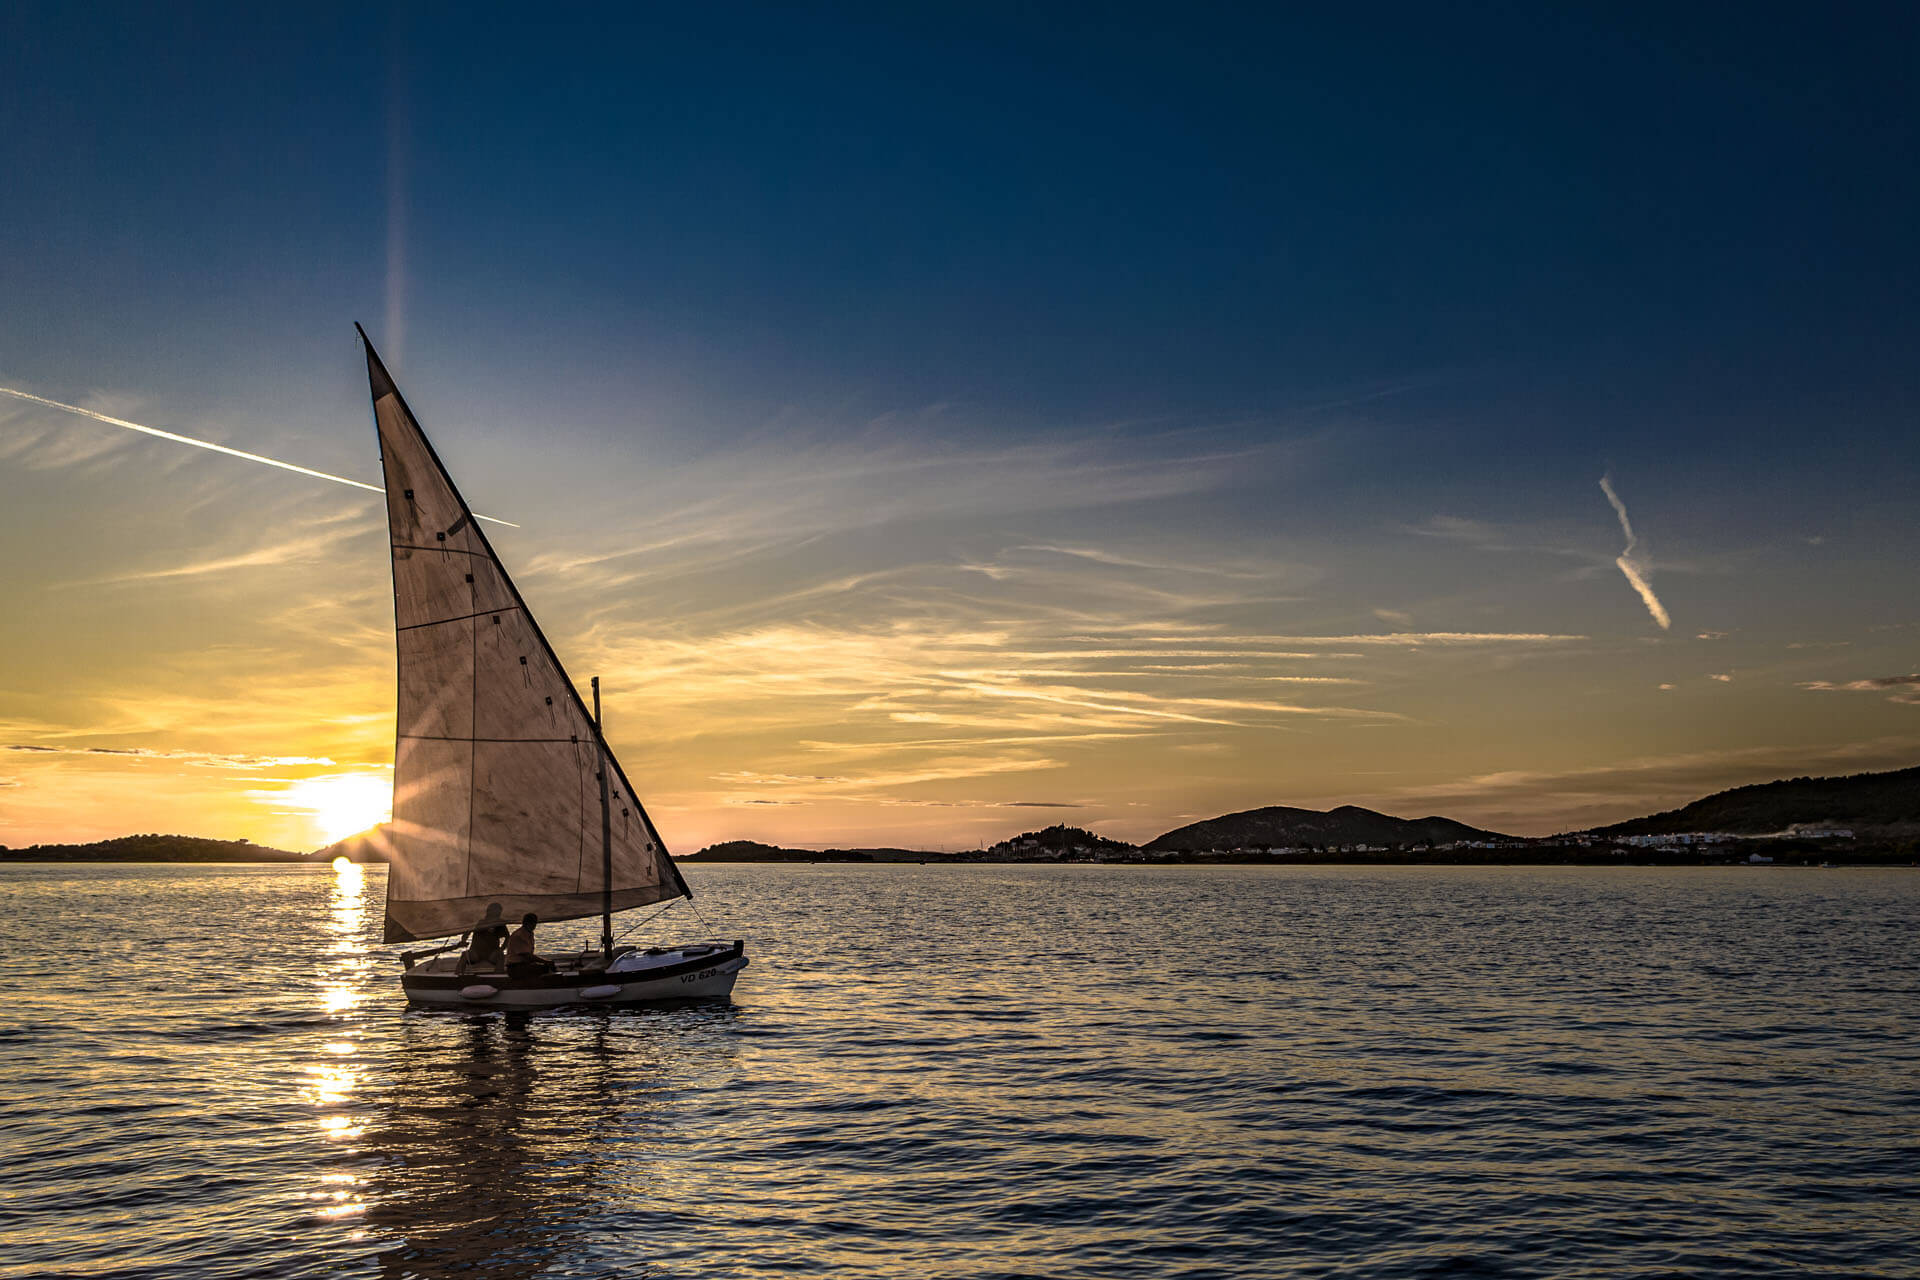 2019/09/24 - Sailing boat at sunset 3